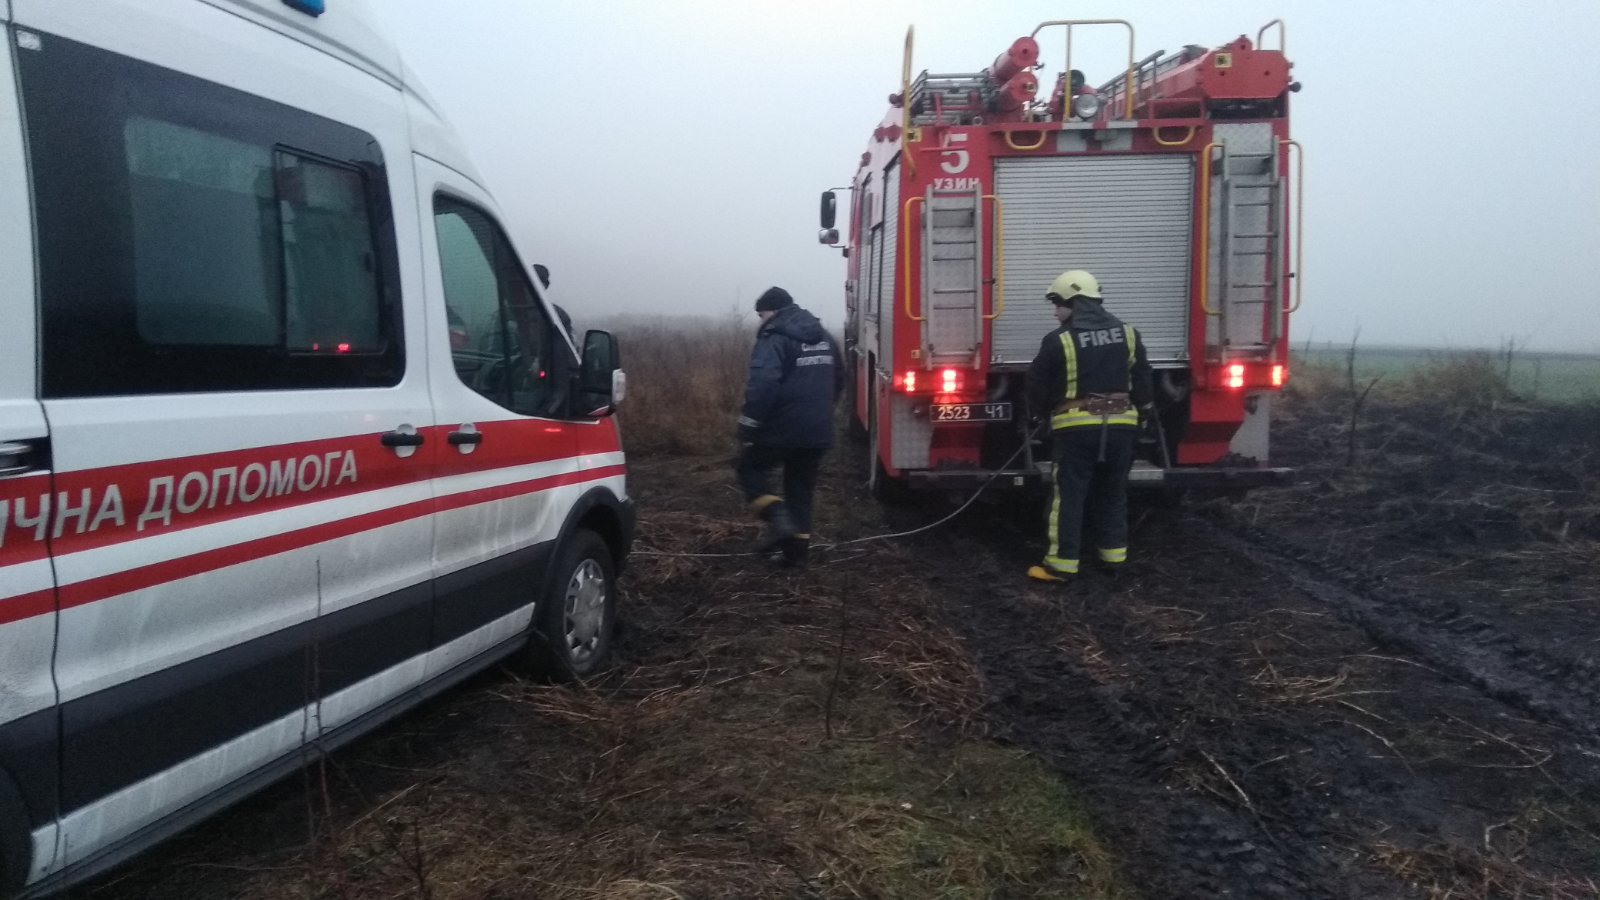 Под Киевом спасатели вытащили скорую помощь из грязи